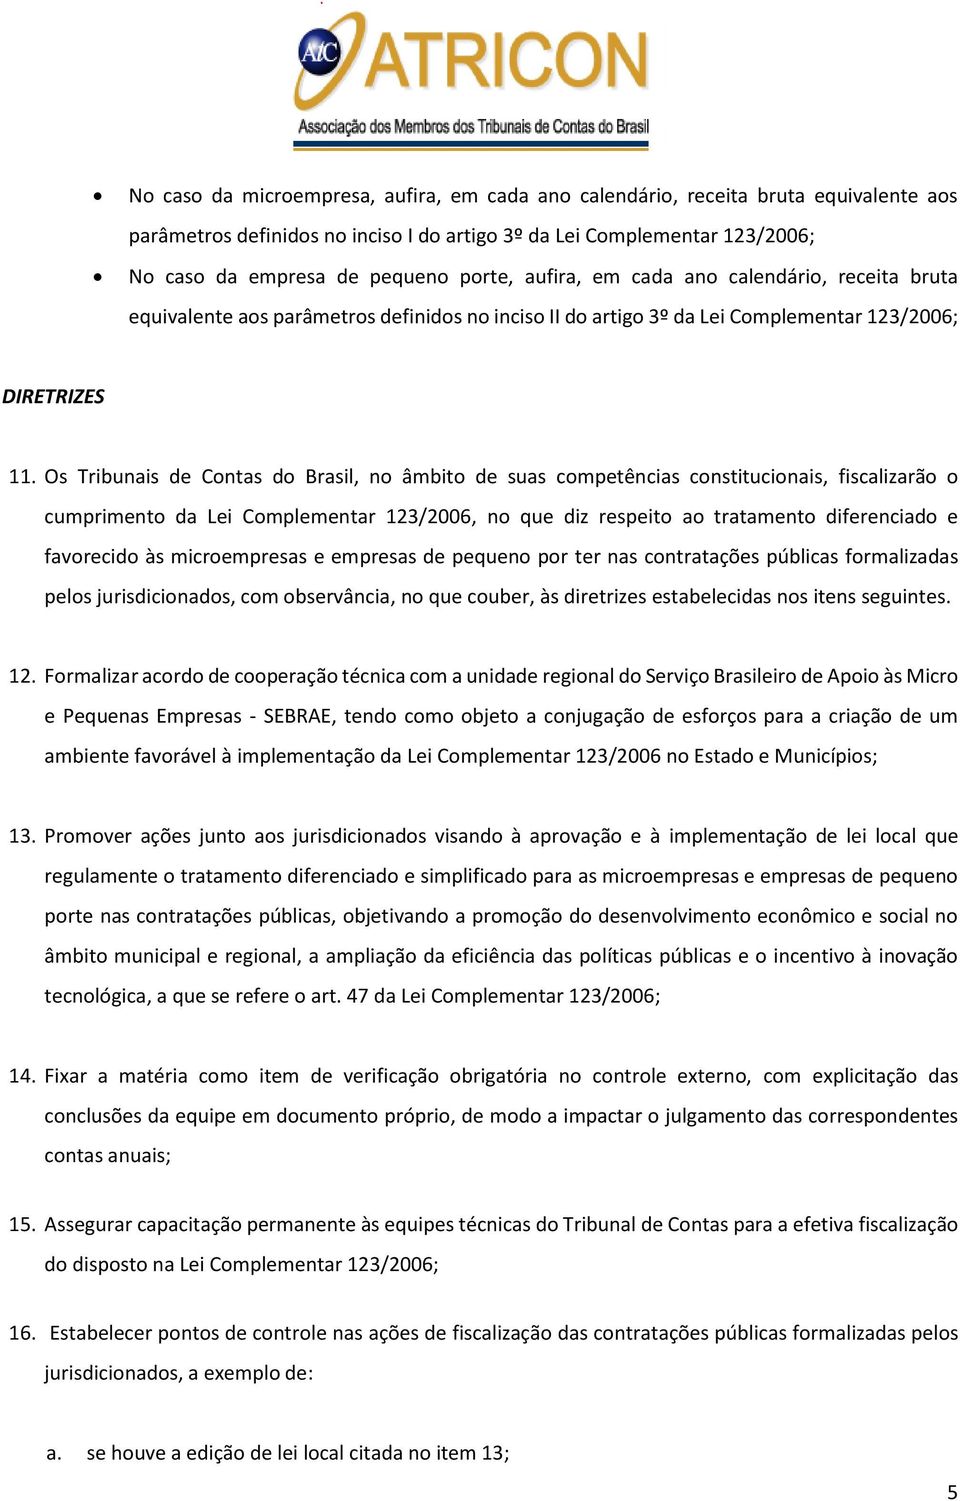 Os Tribunais de Contas do Brasil, no âmbito de suas competências constitucionais, fiscalizarão o cumprimento da Lei Complementar 123/2006, no que diz respeito ao tratamento diferenciado e favorecido